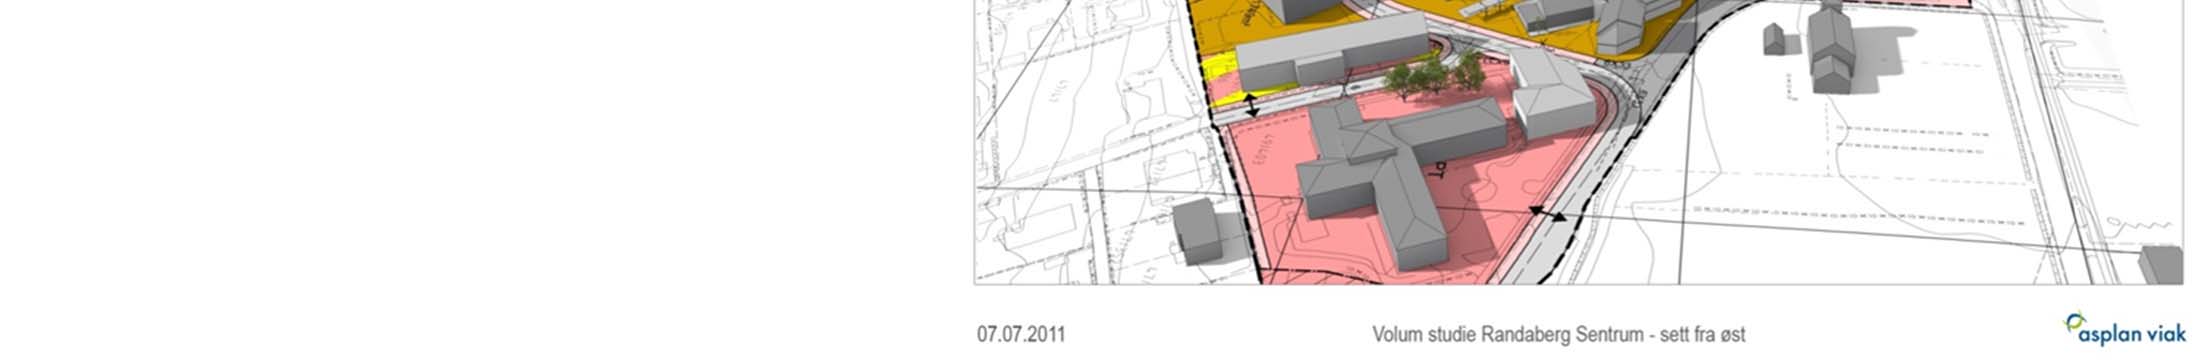 Områderegulering for Randaberg sentrum Volumskisser I dag: 17.000 kvm bolig 20.